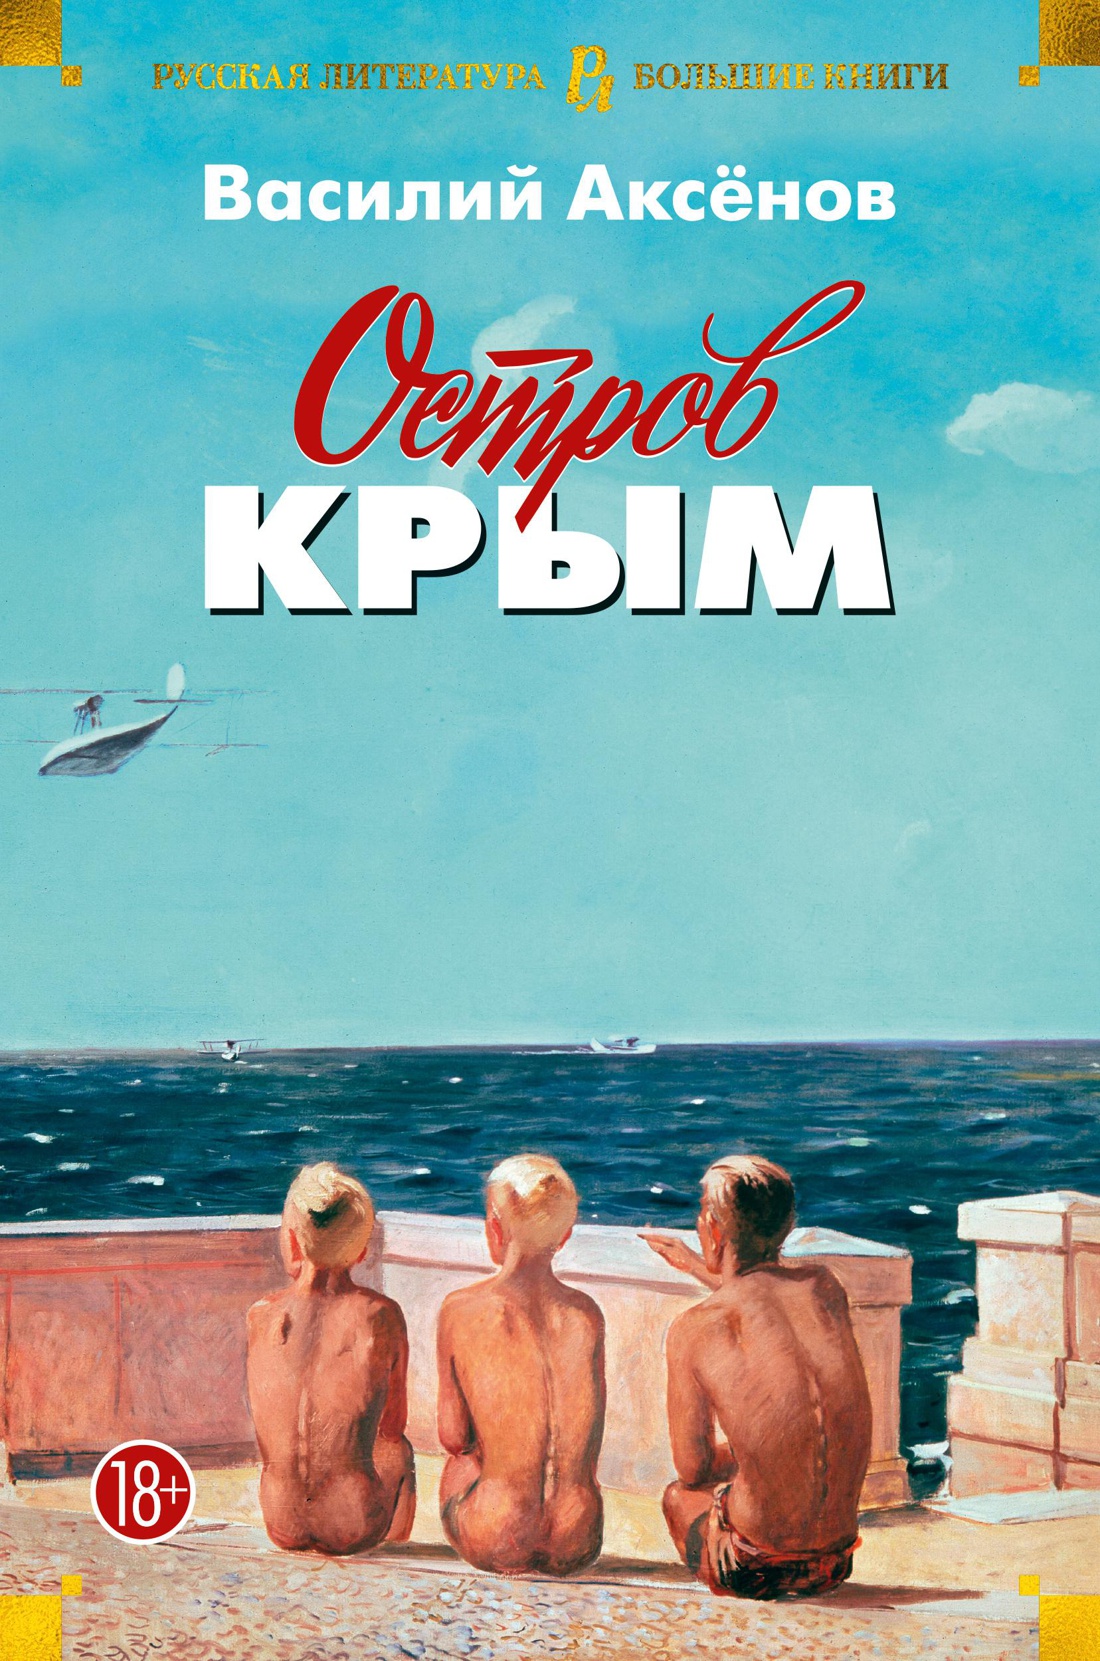 Остров Крым